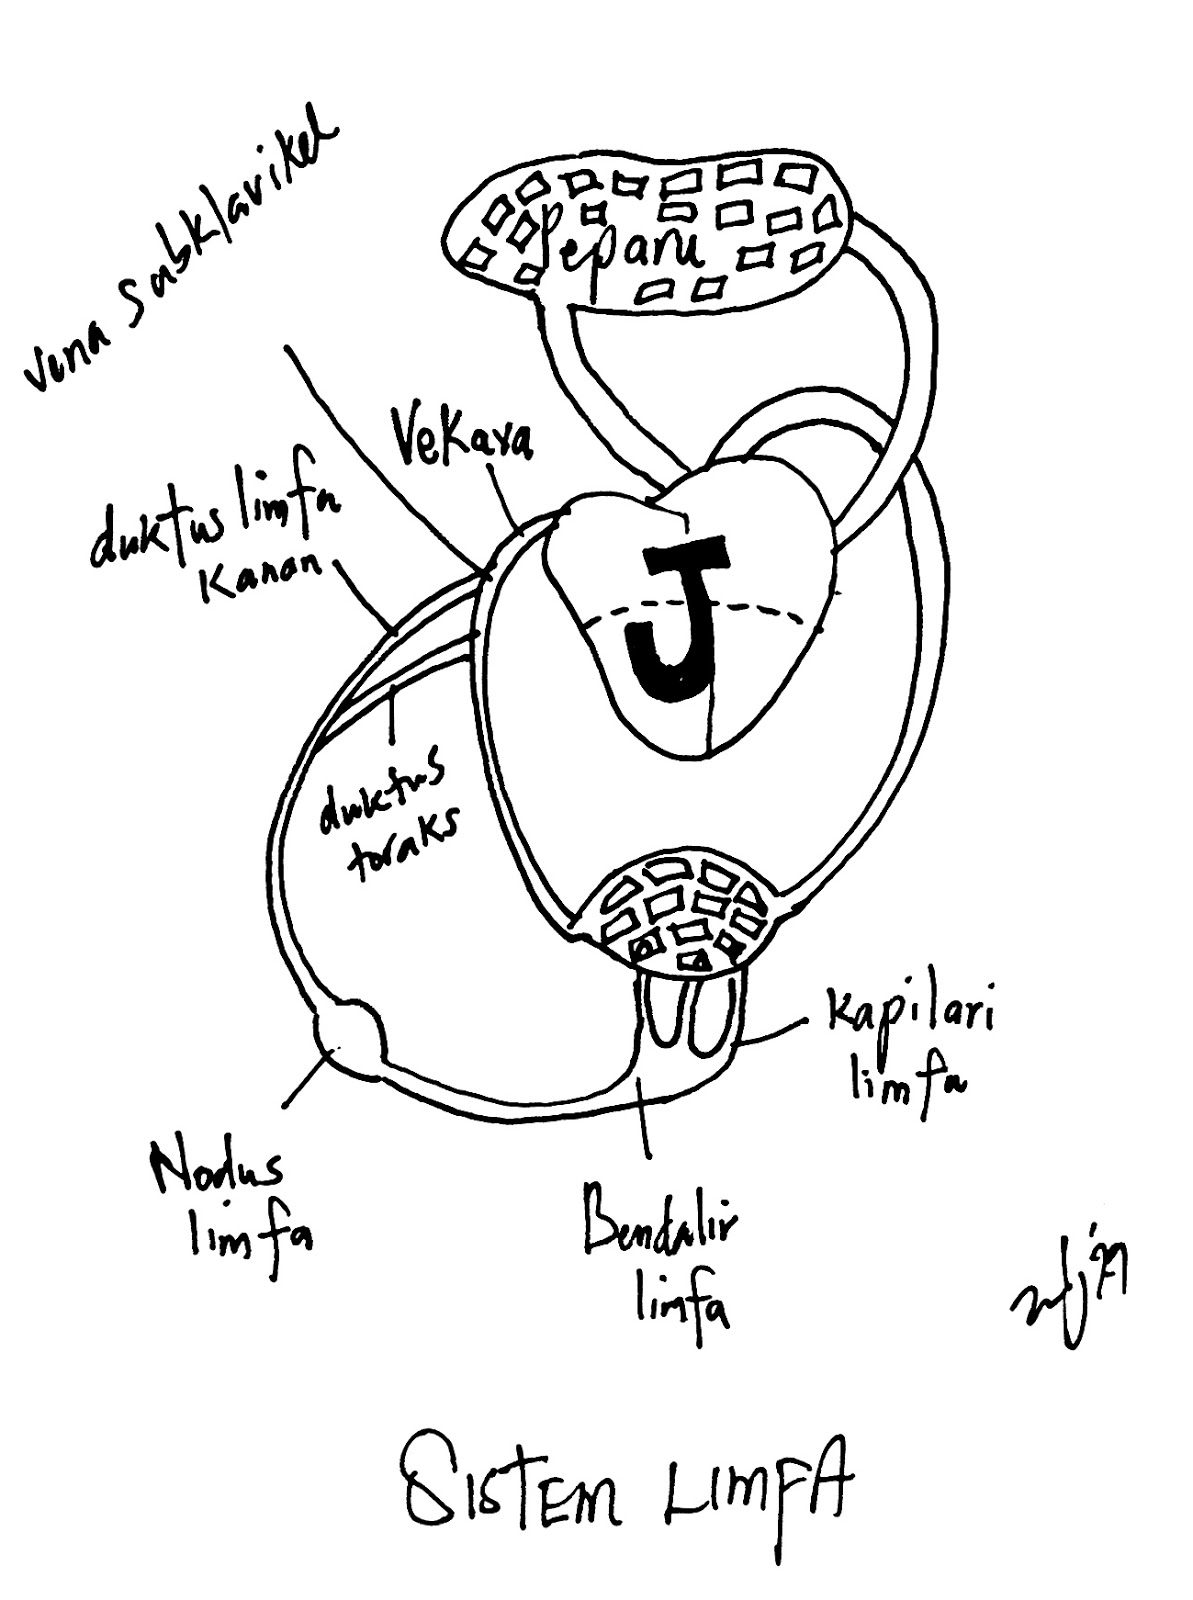 Biology A+: Hubungan antara Sistem Limfa dan Jantung manusia